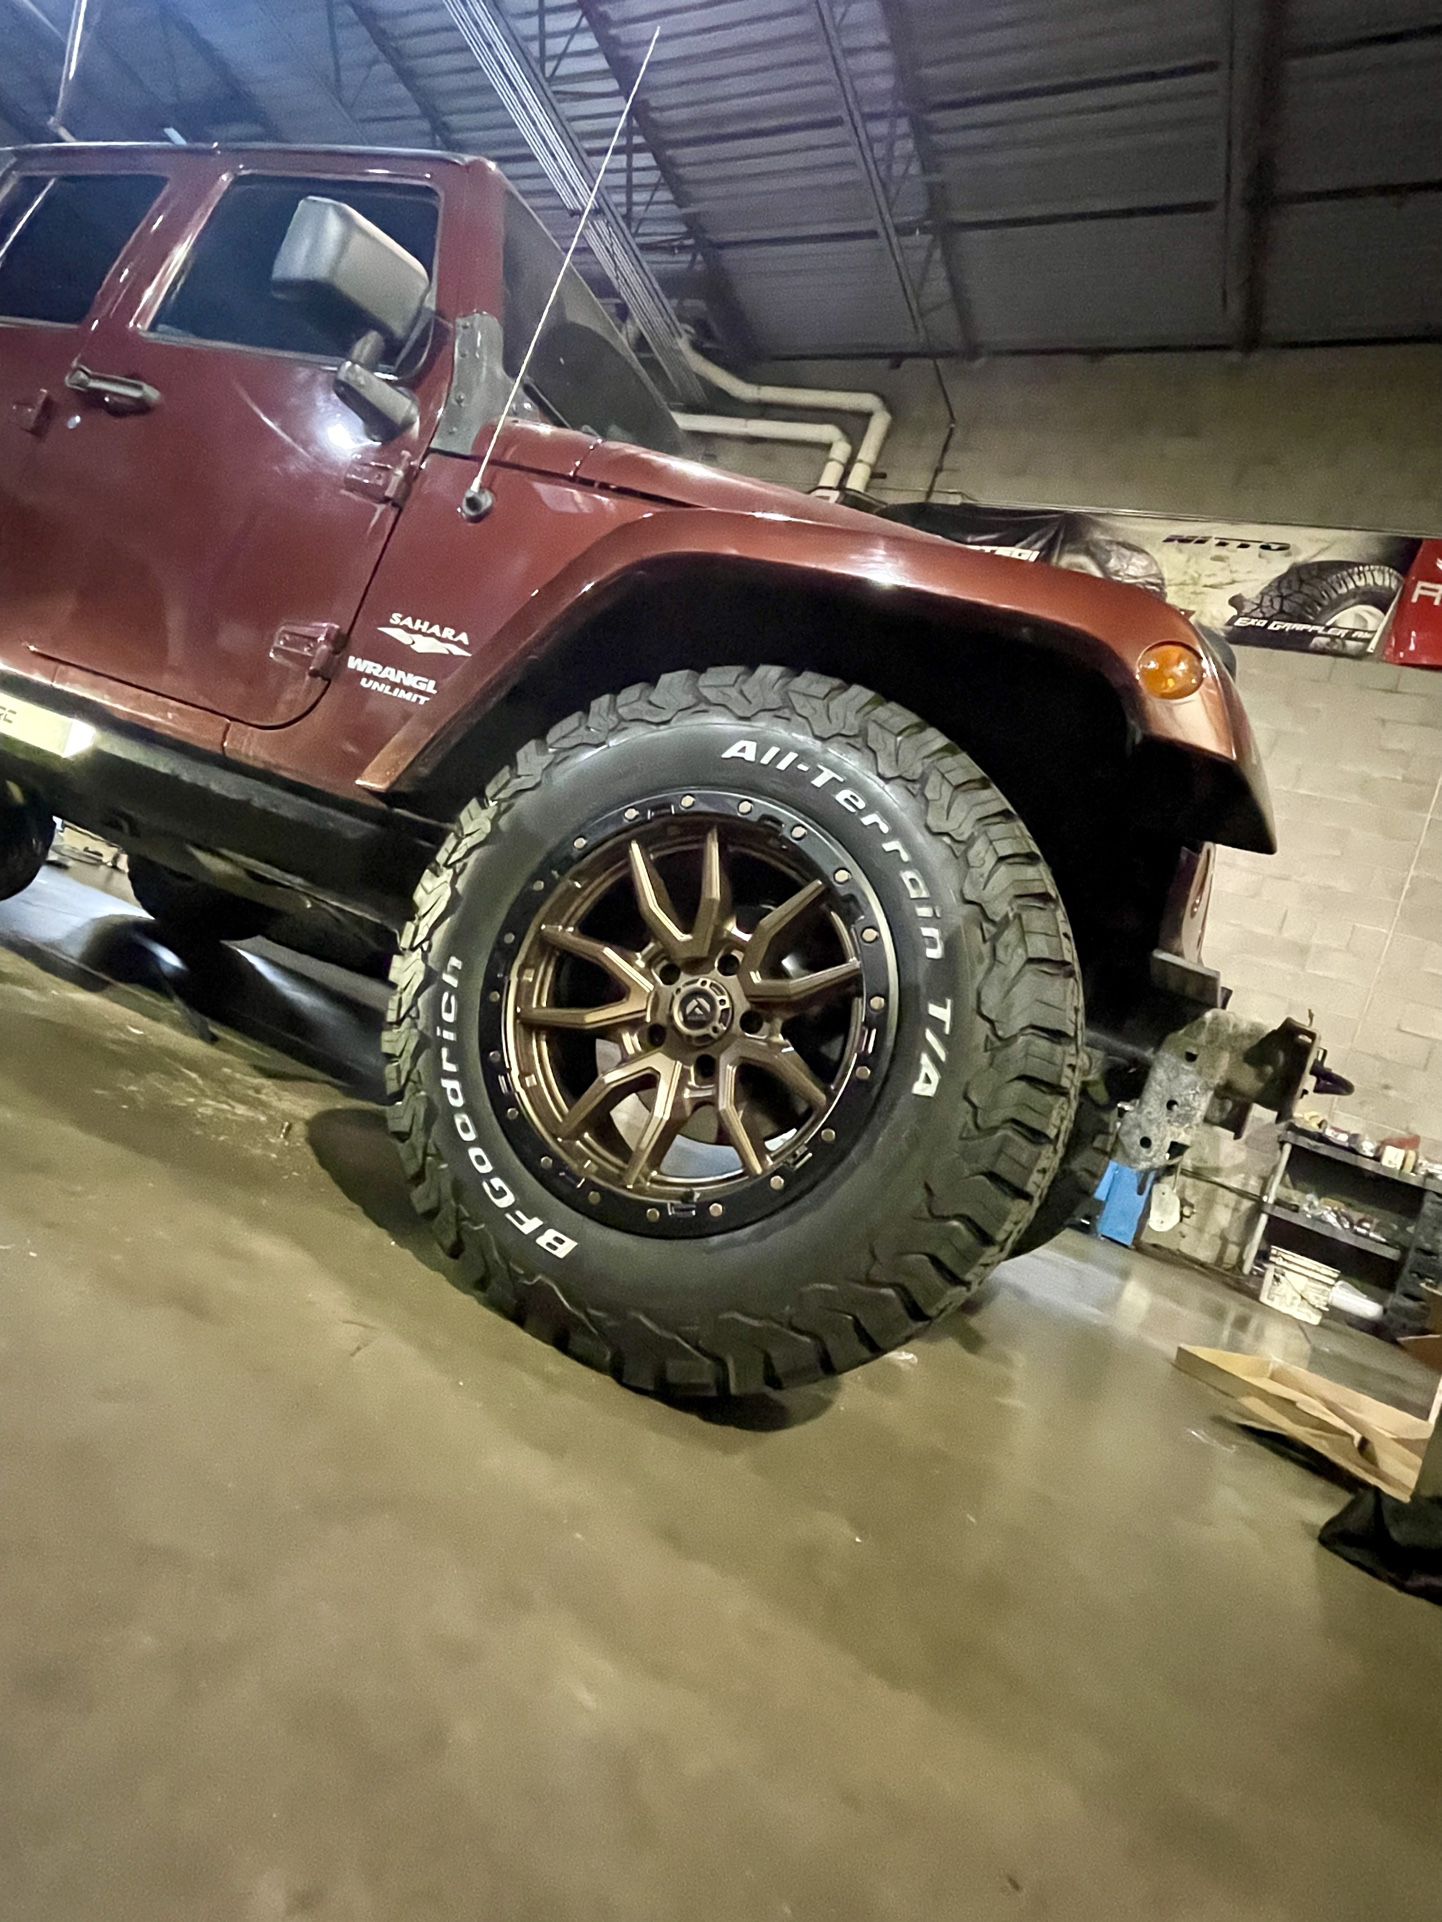 JEEP Wheels tires Lift Kits Accessories Installations. TJ XJ JK JL JT 